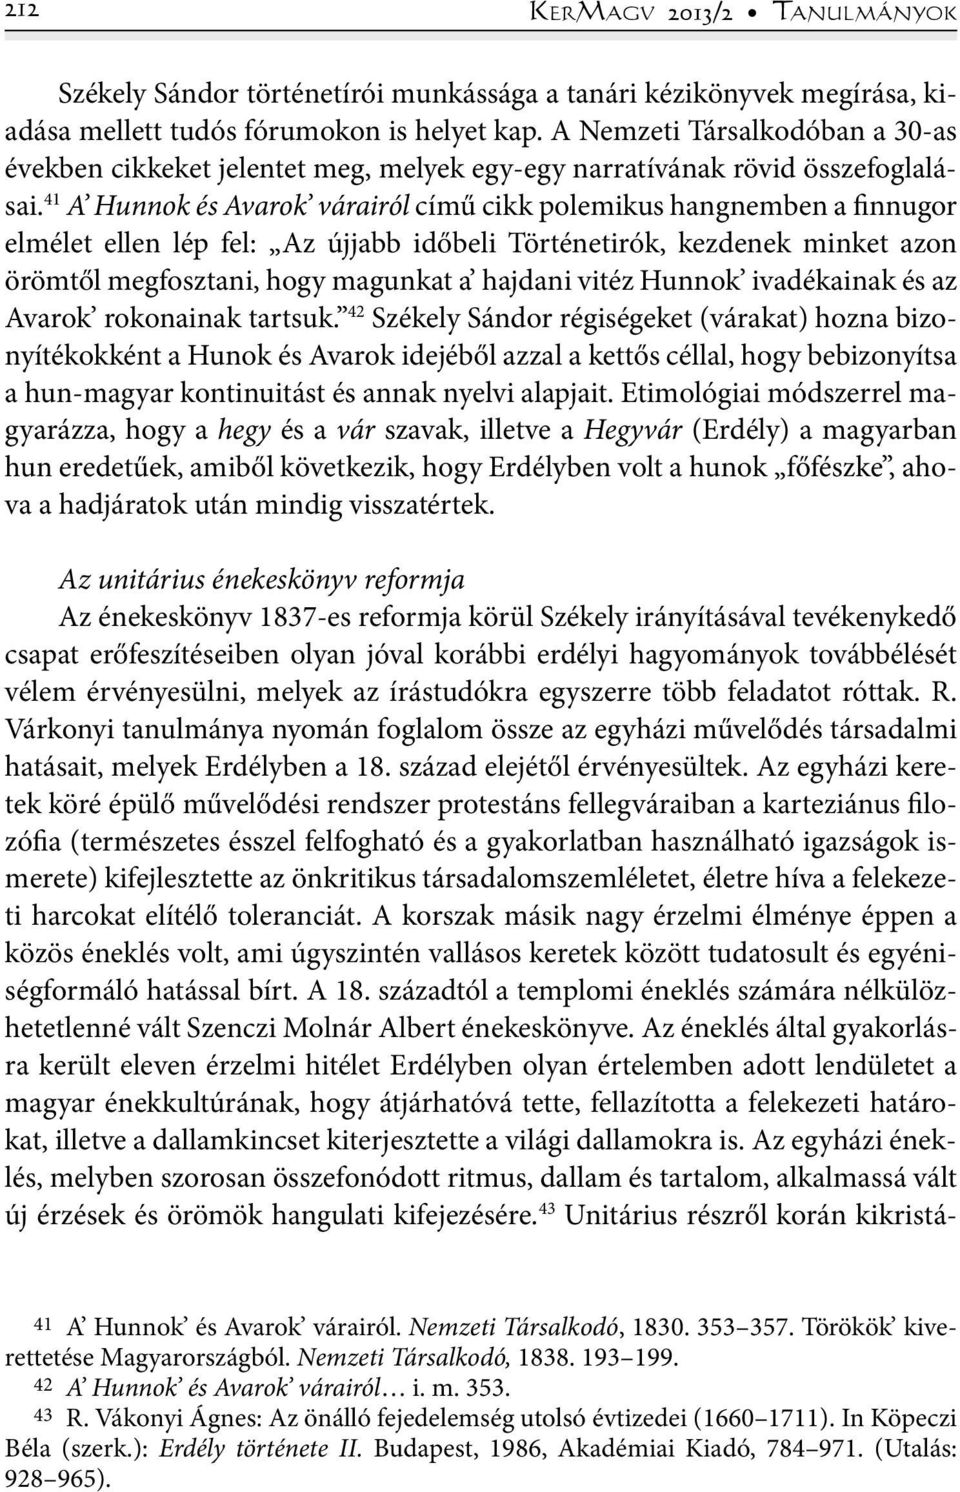 41 A Hunnok és Avarok várairól című cikk polemikus hangnemben a finnugor elmélet ellen lép fel: Az újjabb időbeli Történetirók, kezdenek minket azon örömtől megfosztani, hogy magunkat a hajdani vitéz